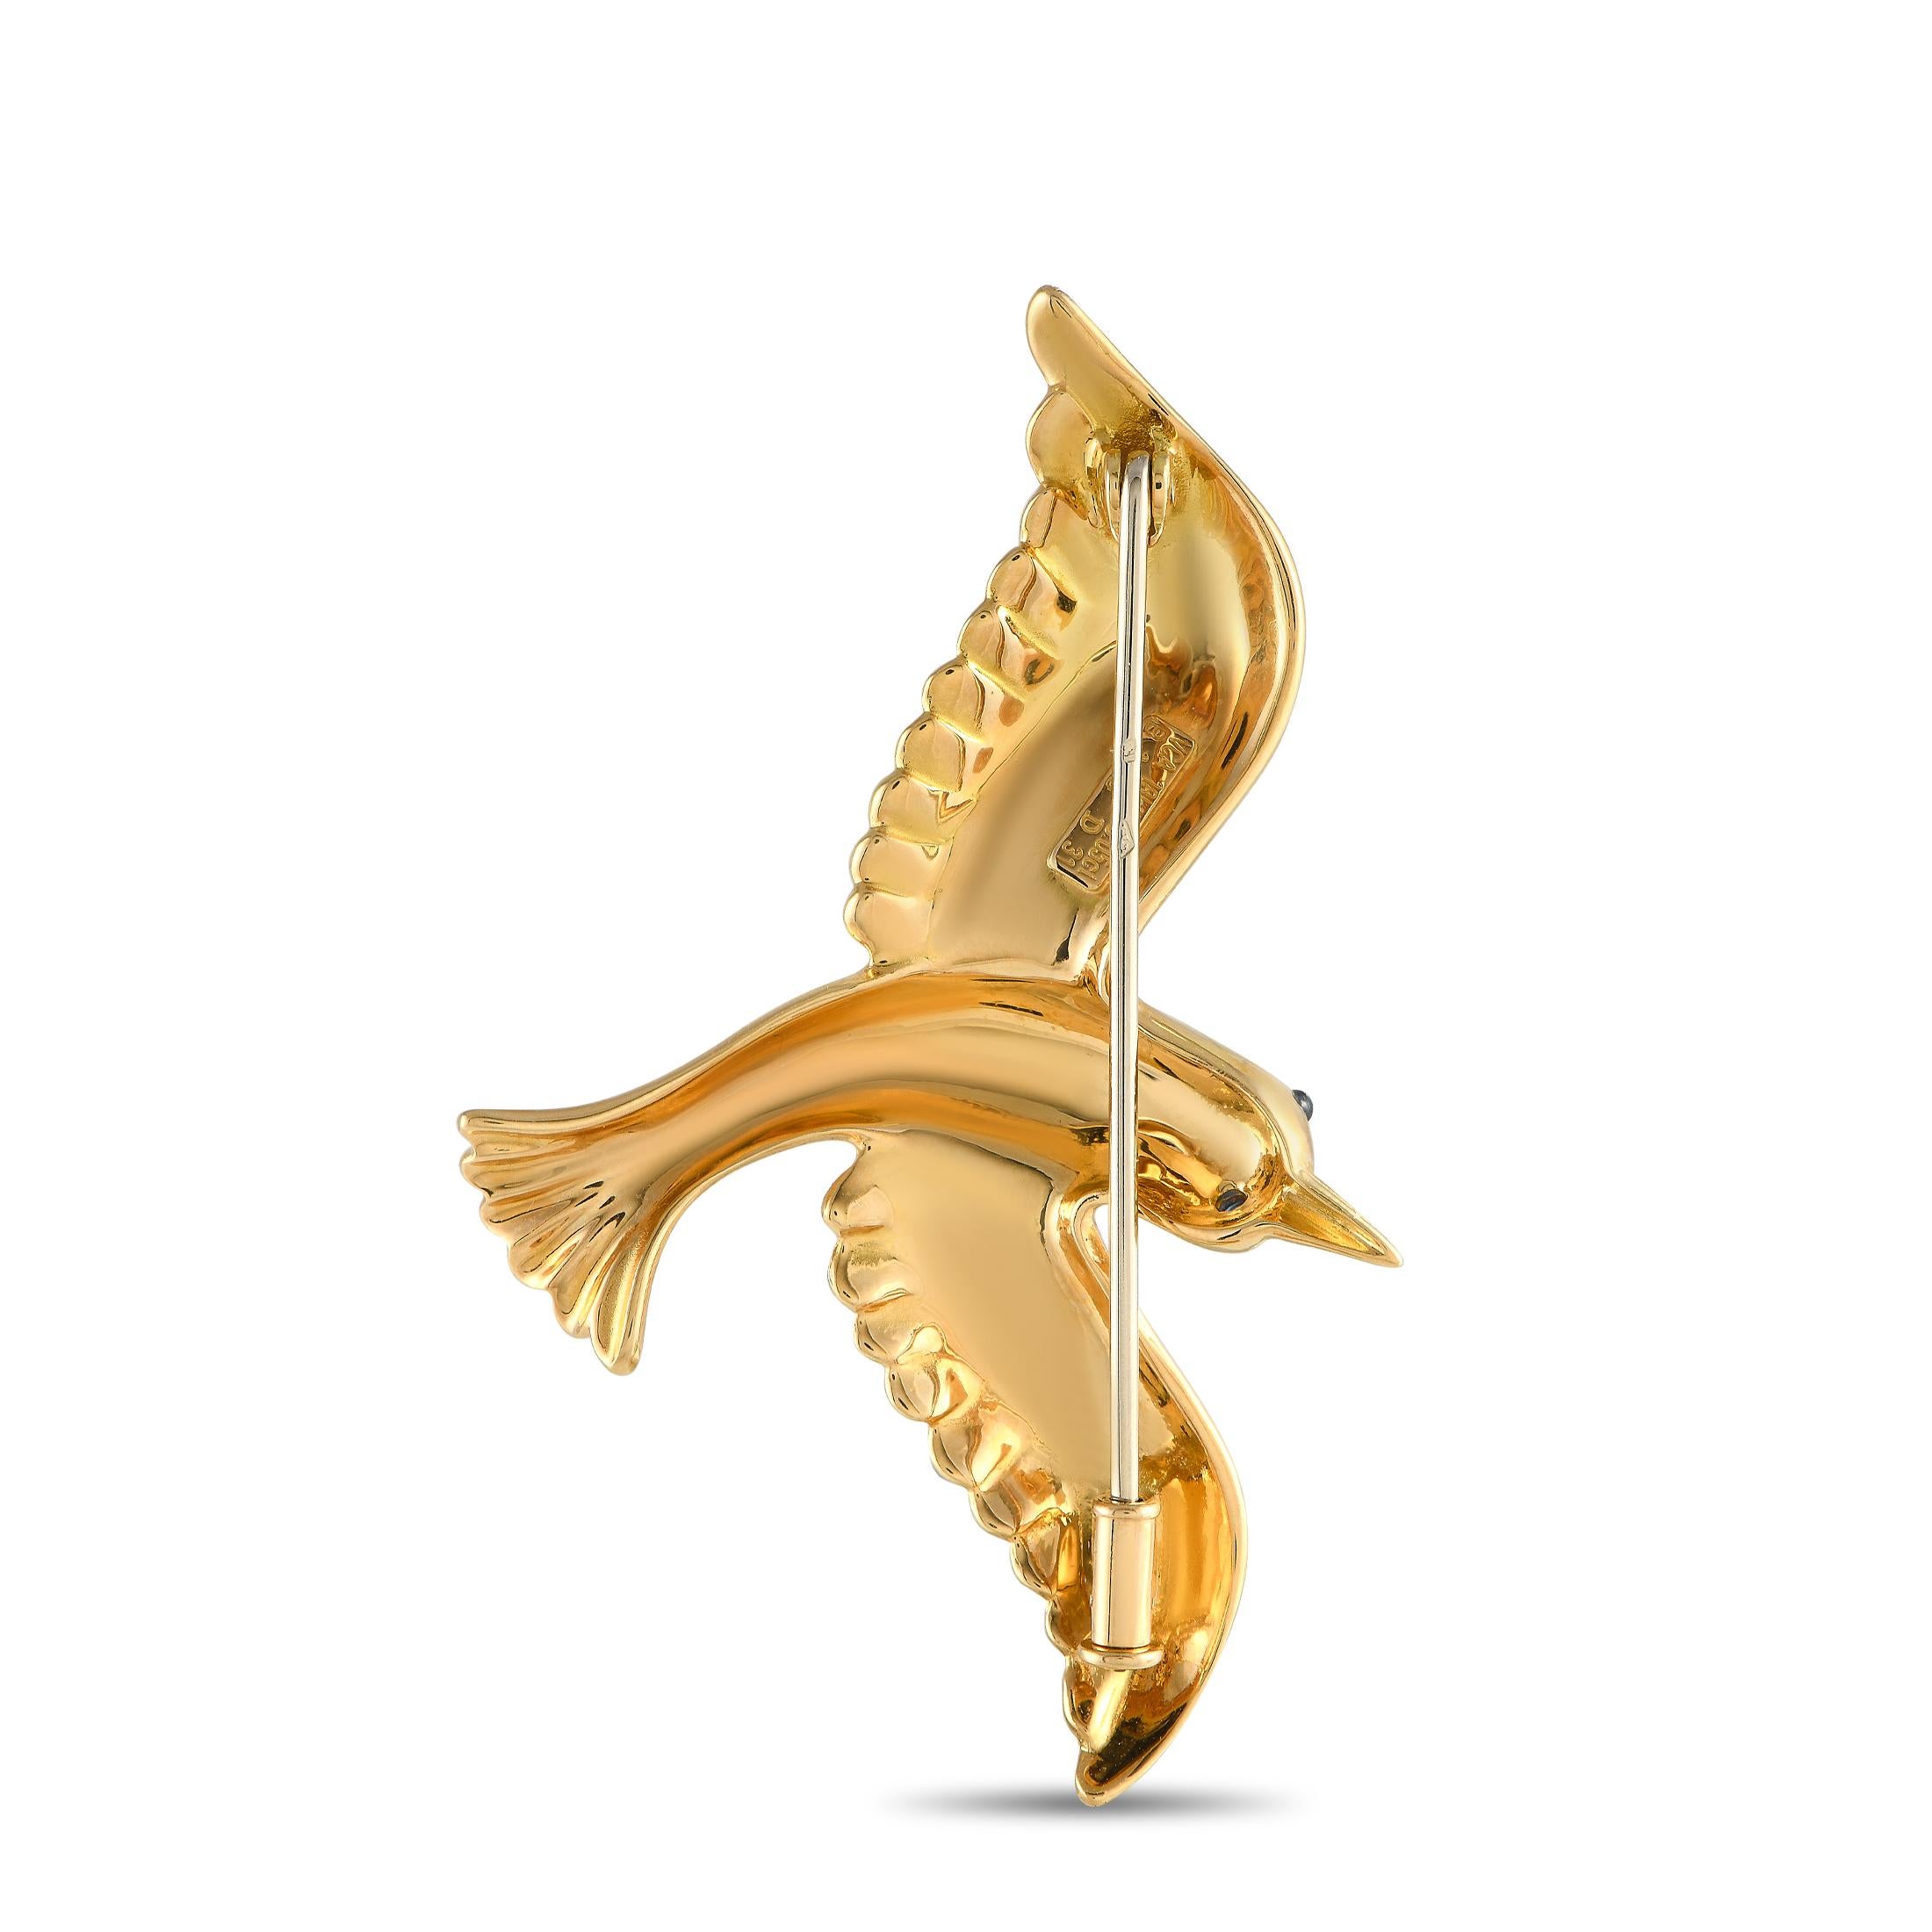 Cette broche vintage Van Cleef & Arpels complétera à merveille toute collection de bijoux. Le design complexe est réalisé en or jaune 18 carats et représente magnifiquement un oiseau en vol. Il mesure 1,35